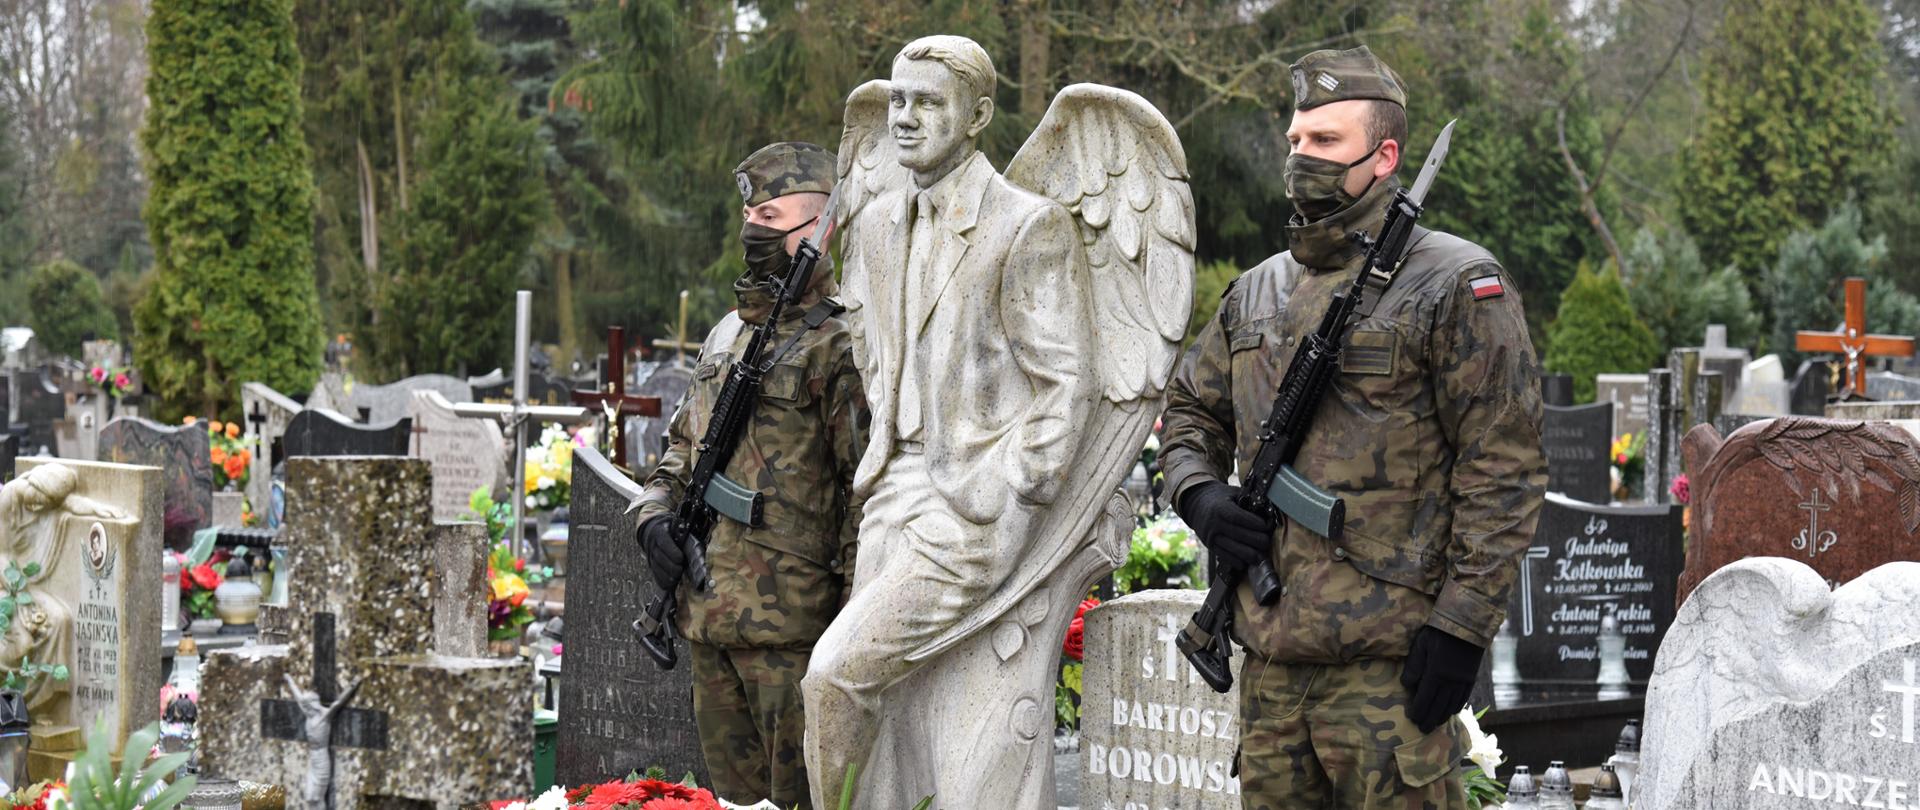 2 żołnierzy w mundurach trzyma wartę przy pomniku Bartosza Borowskiego. Na pomniku leżą biało-czerwone wiązanki kwiatów złożone przez delegacje. W tle cmentarz - inne pomniki z kwiatami i zniczami 